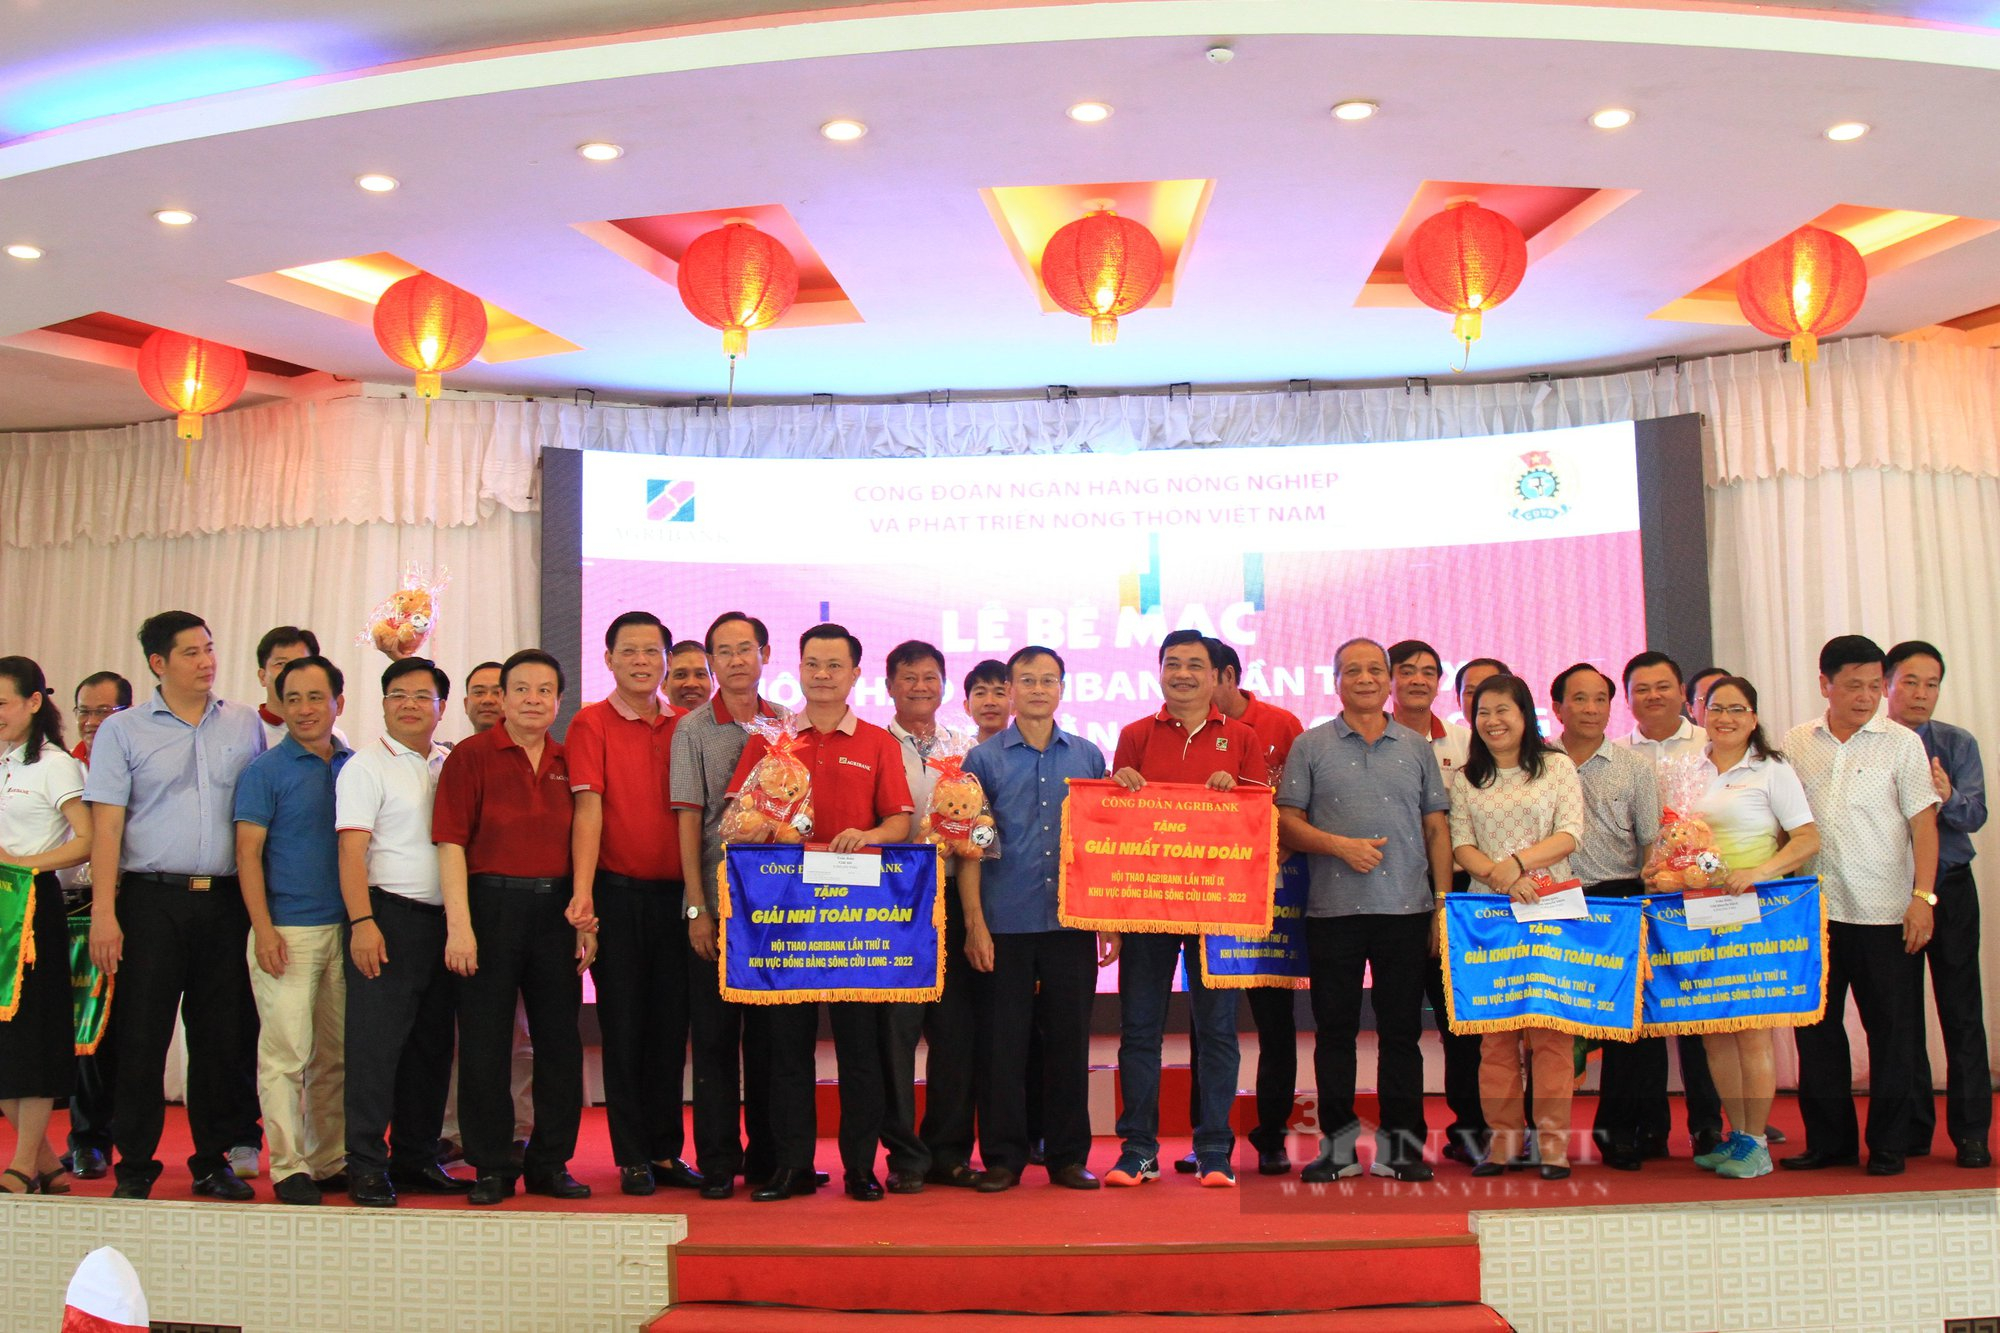 Đoàn Agribank chi nhánh An Giang giành giải Nhất toàn đoàn tại Hội thao Agribank lần thứ IX khu vực ĐBSCL - Ảnh 5.